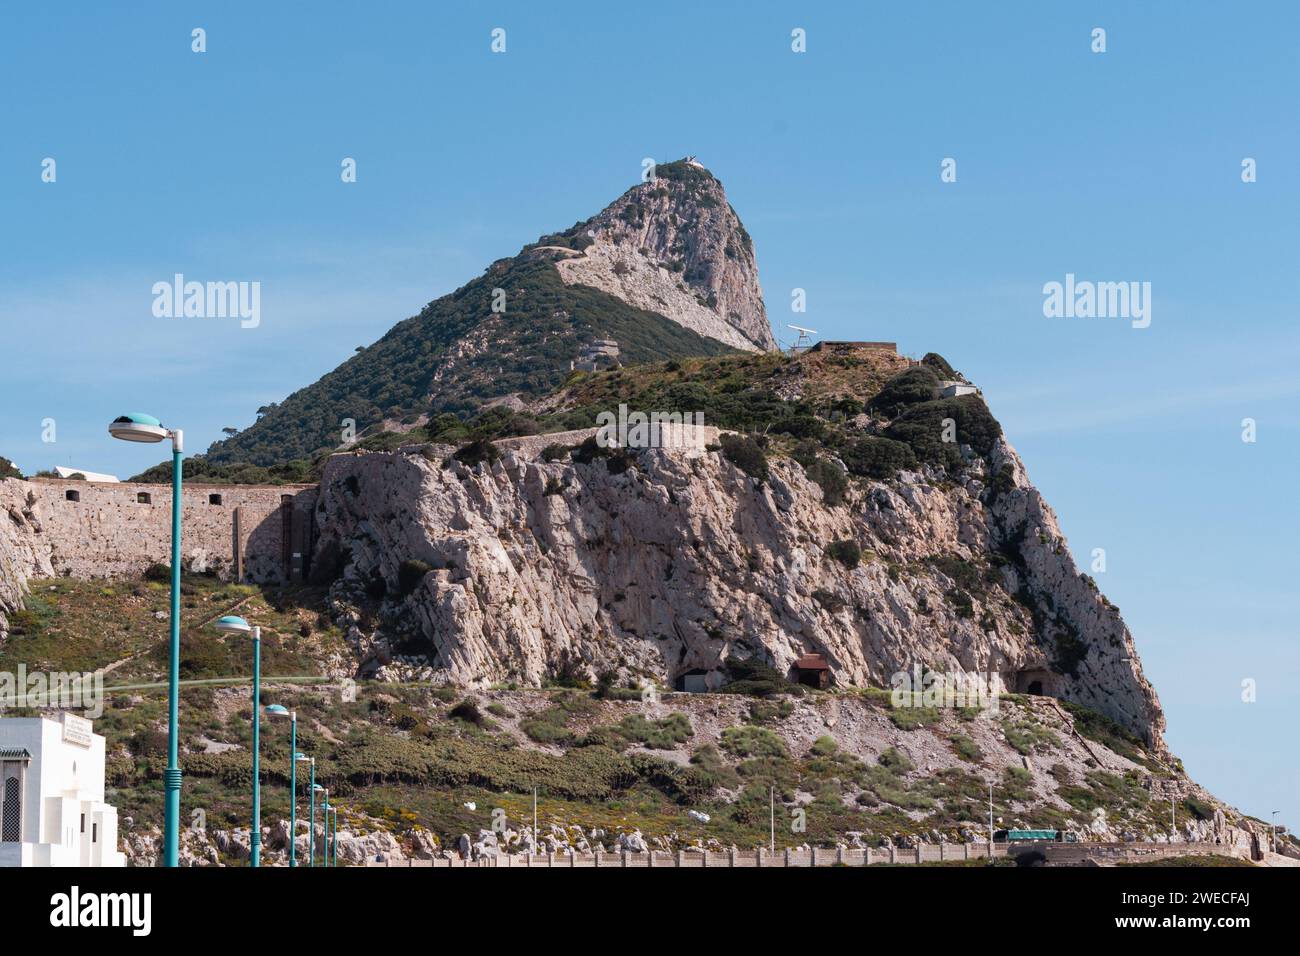 Der Felsen von Gibraltar: Ein majestätisches Wahrzeichen an der Küste, ein geologisches Wunder und ein Symbol des britischen Erbes mit Blick auf das Mittelmeer. Stockfoto